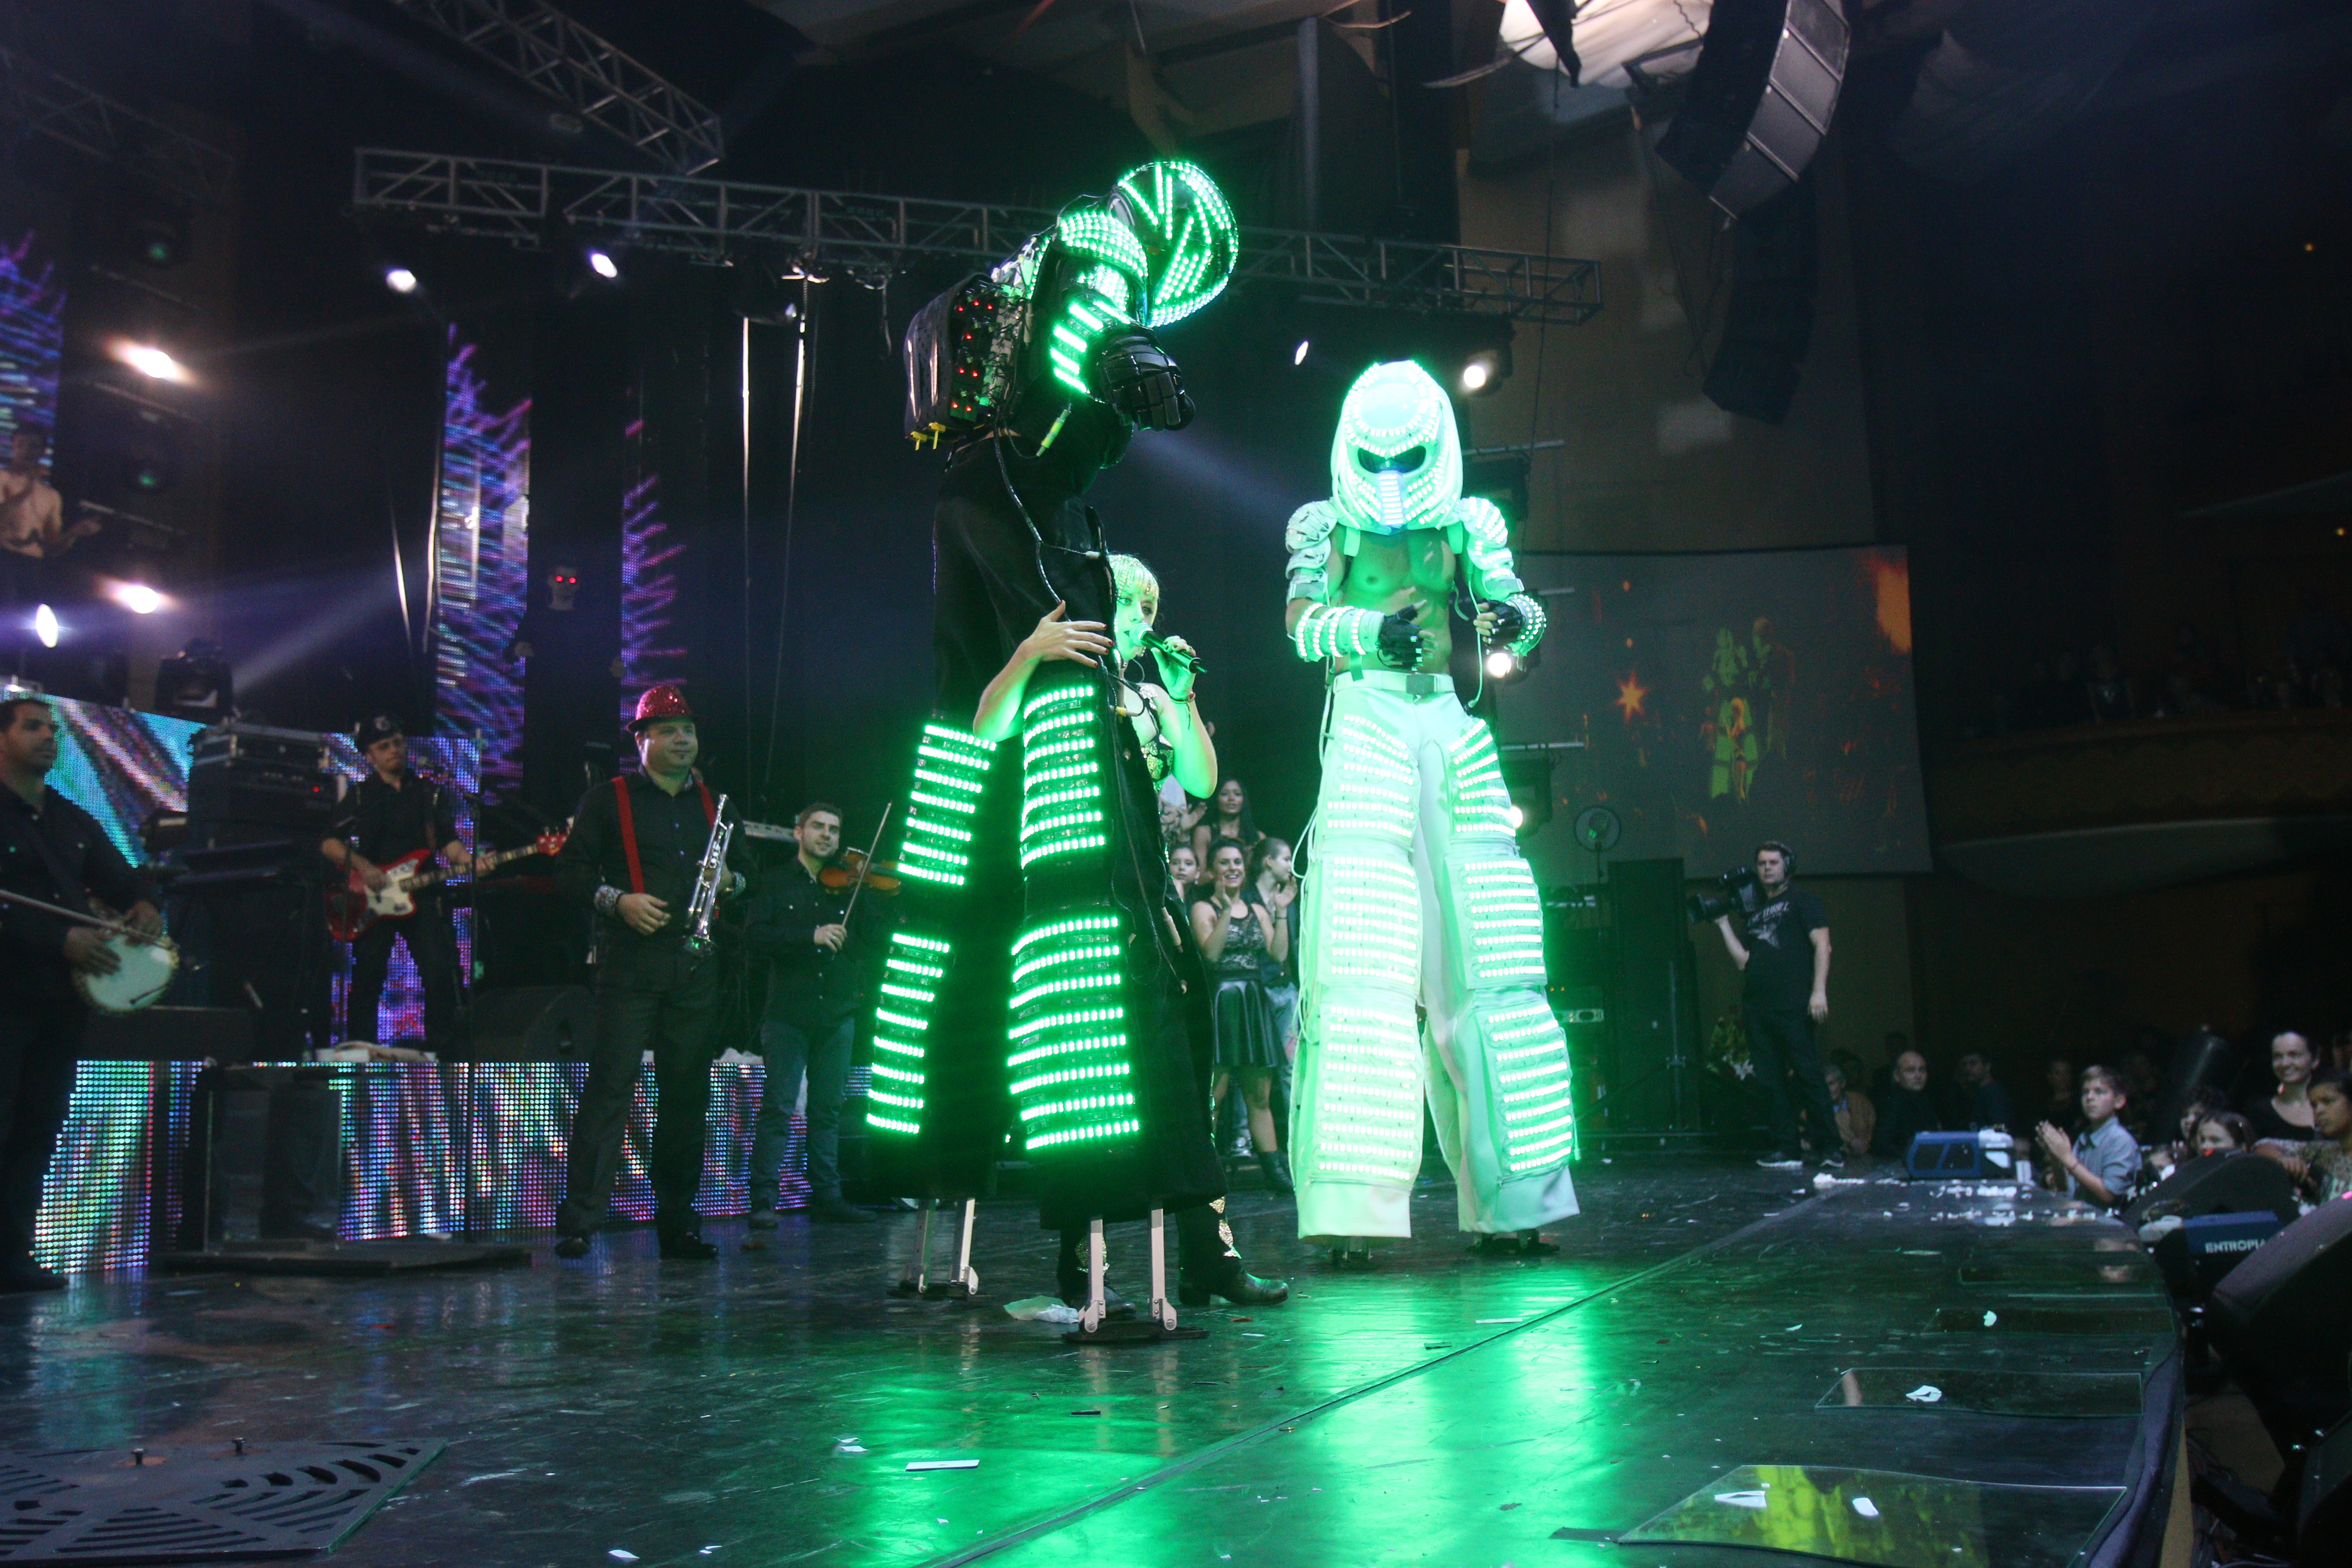 Vedeta a deschis spectacolul cu niste roboti imensi care au dansat alaturi de ea, pe scena